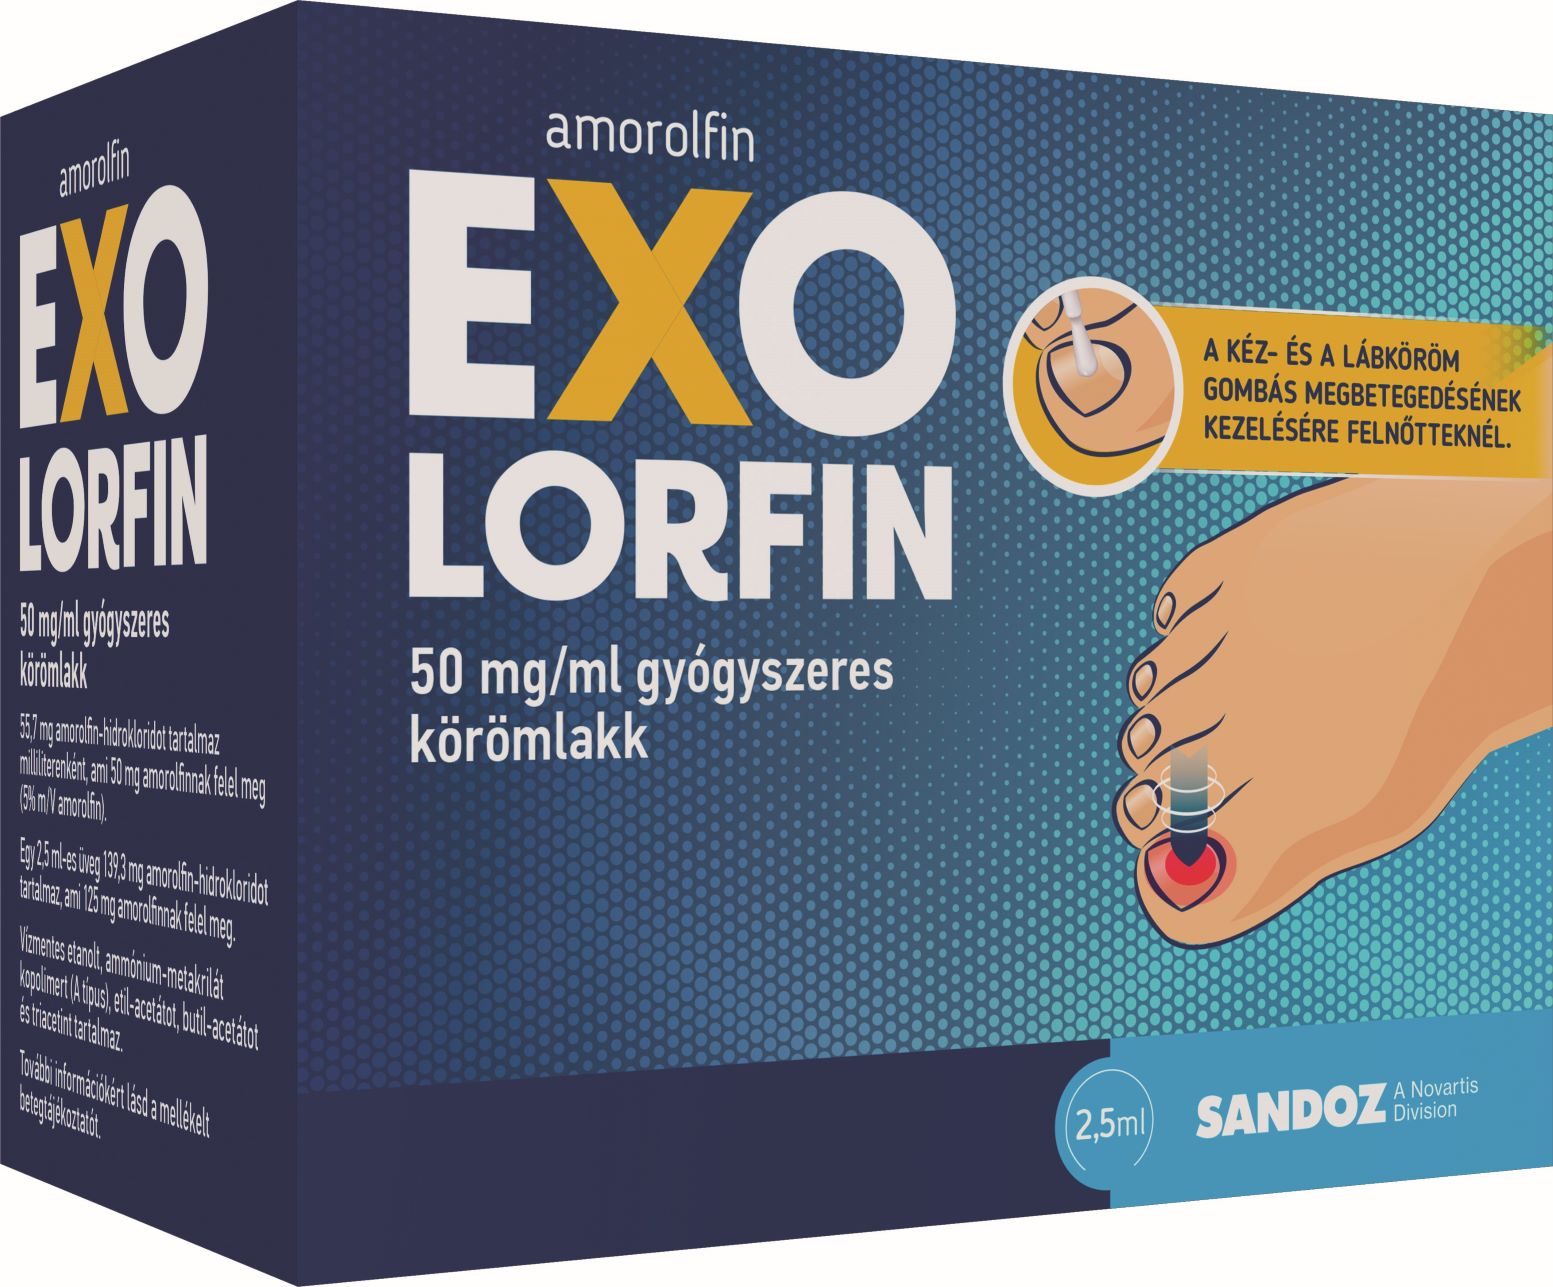 Exolorfin 50 mg/ml gyógyszeres körömlakk